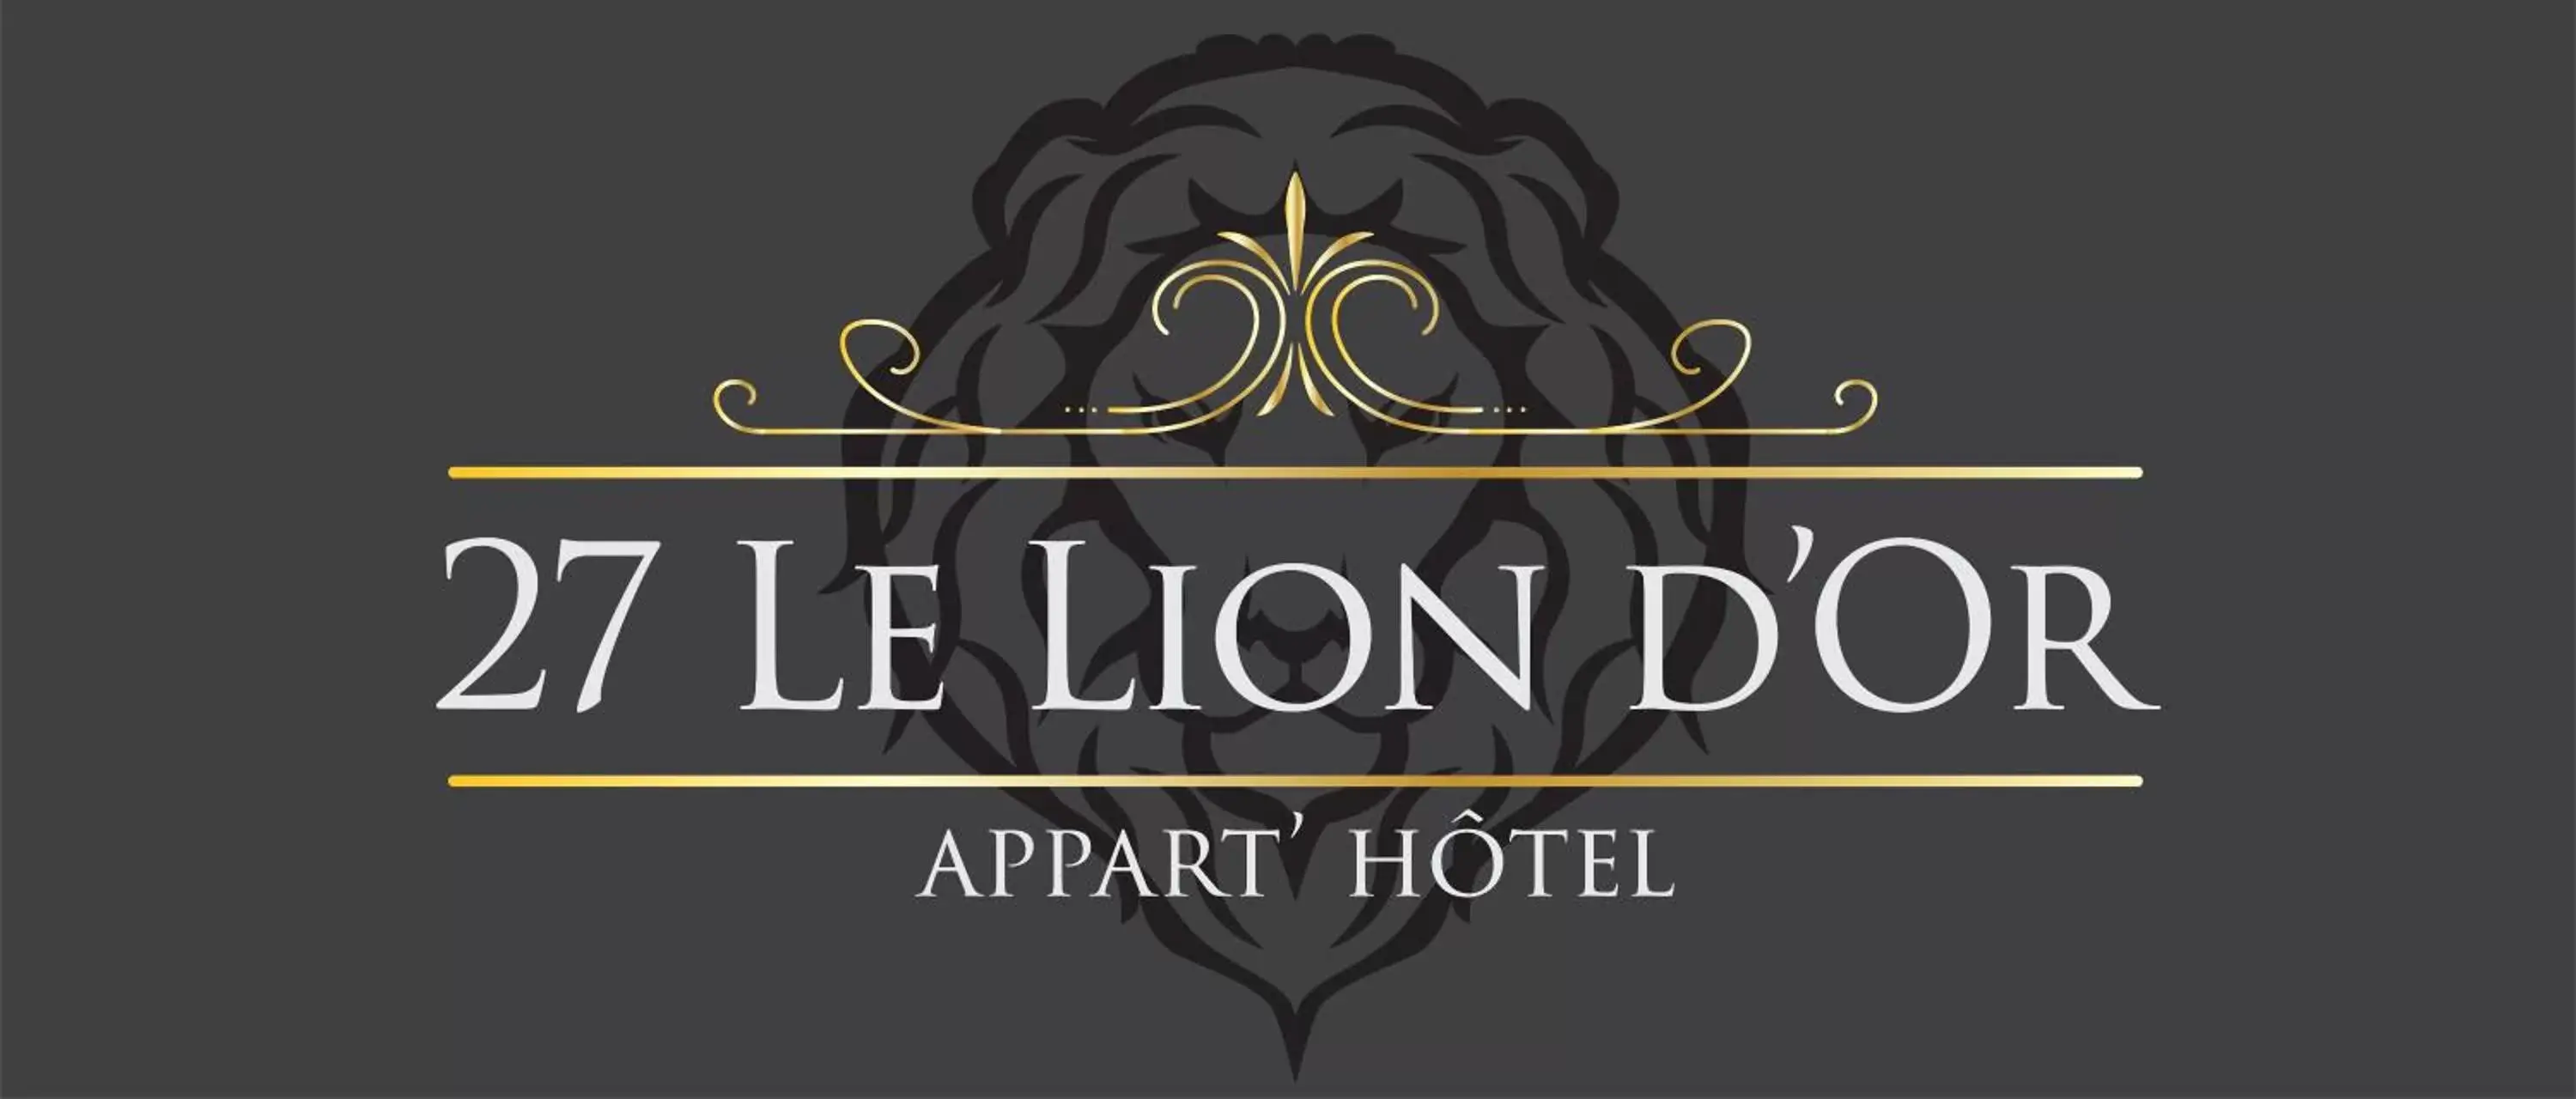 Property Logo/Sign in Appart'hôtel 27 le lion d'or